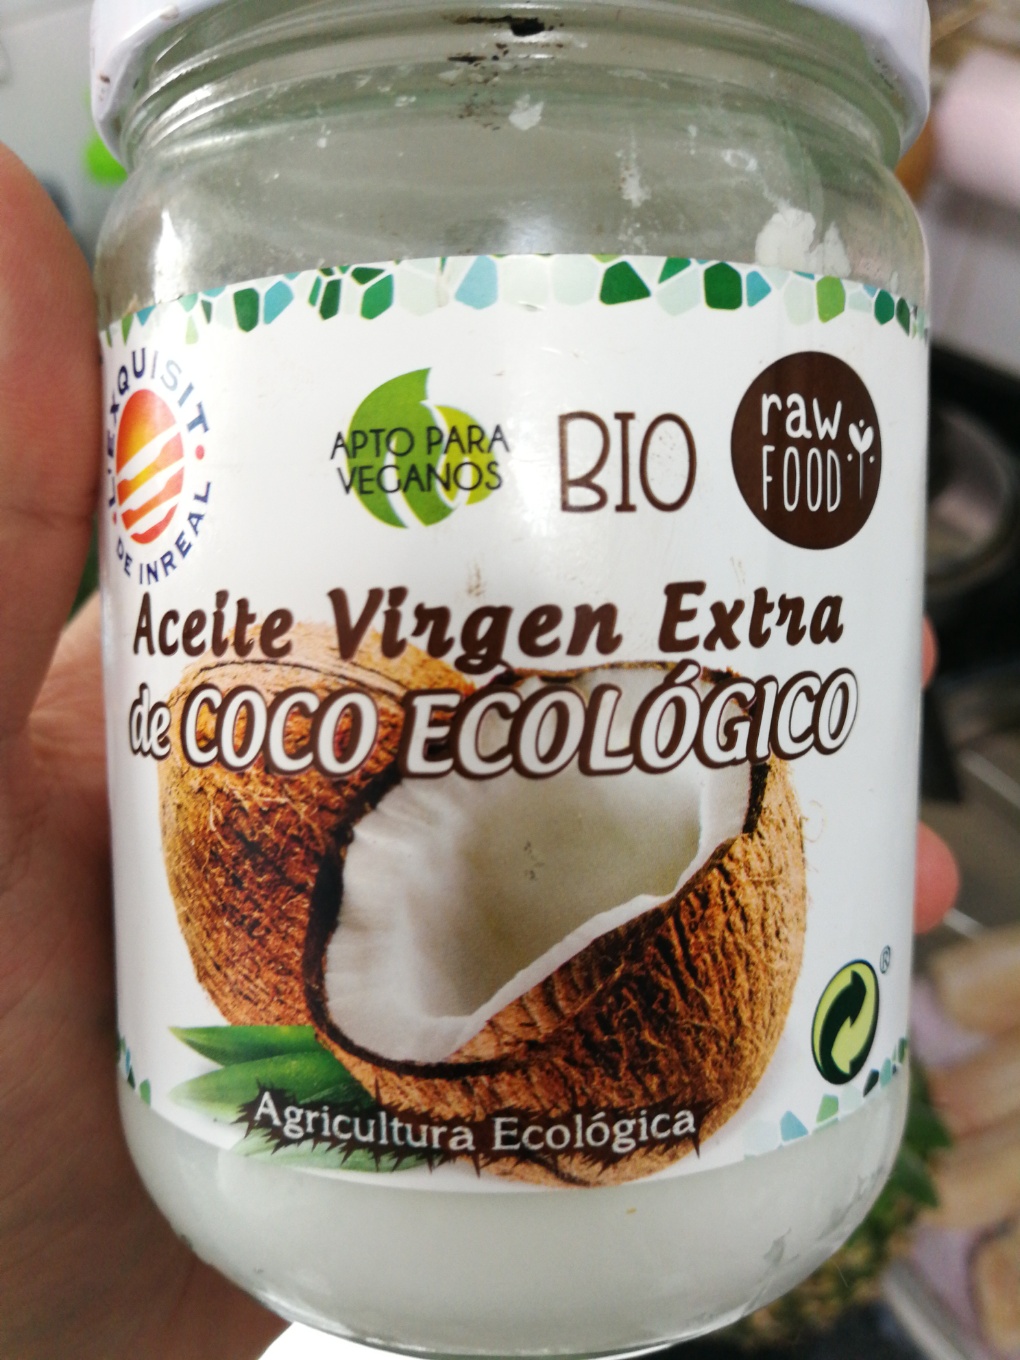 Aceite virgen extra de coco ecológico